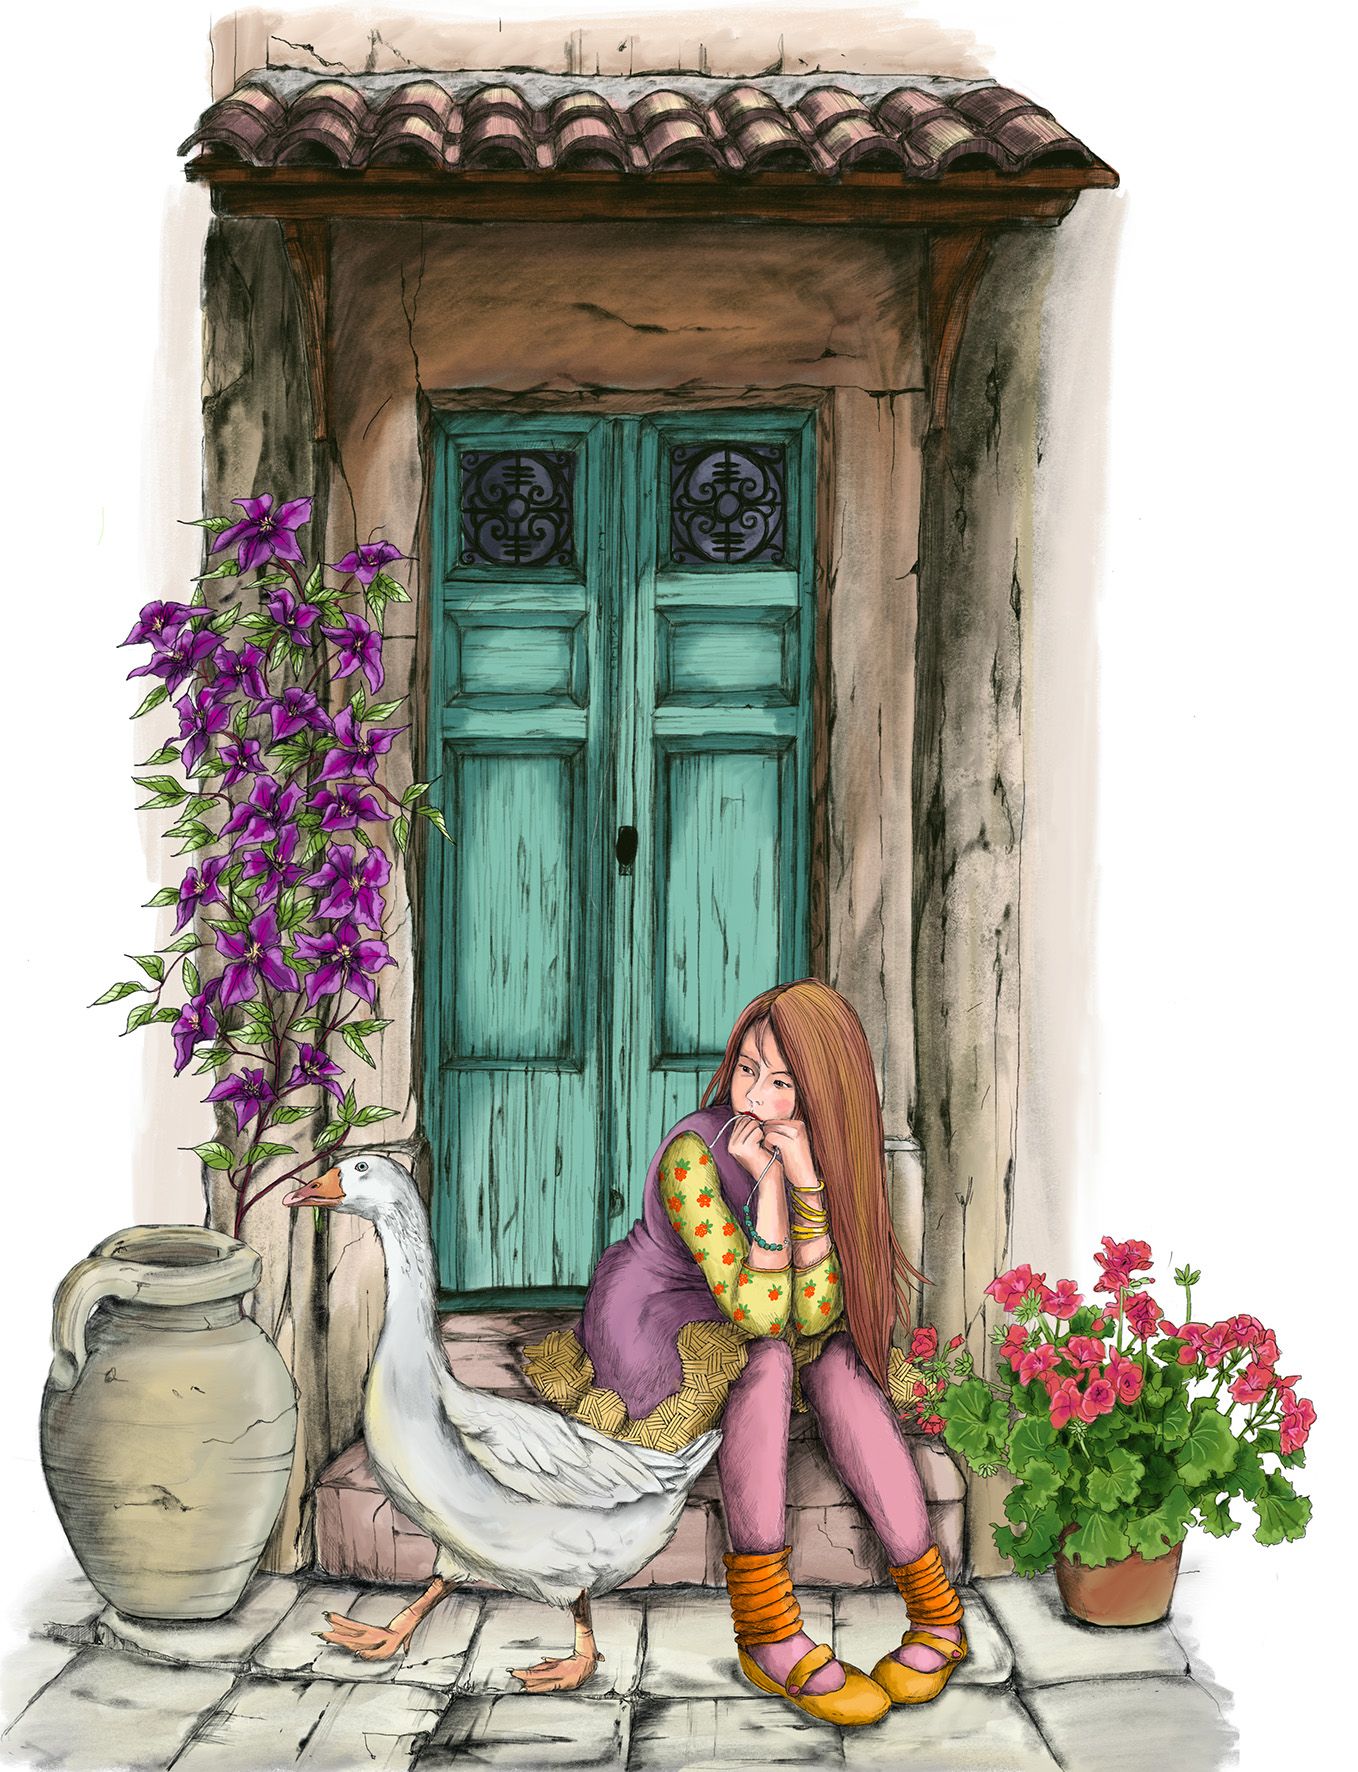 eine Frau sitzt vor einem Hauseingang mit alter mit Pflanzen berankter Tür. Im Vordergrund läuft eine Gans